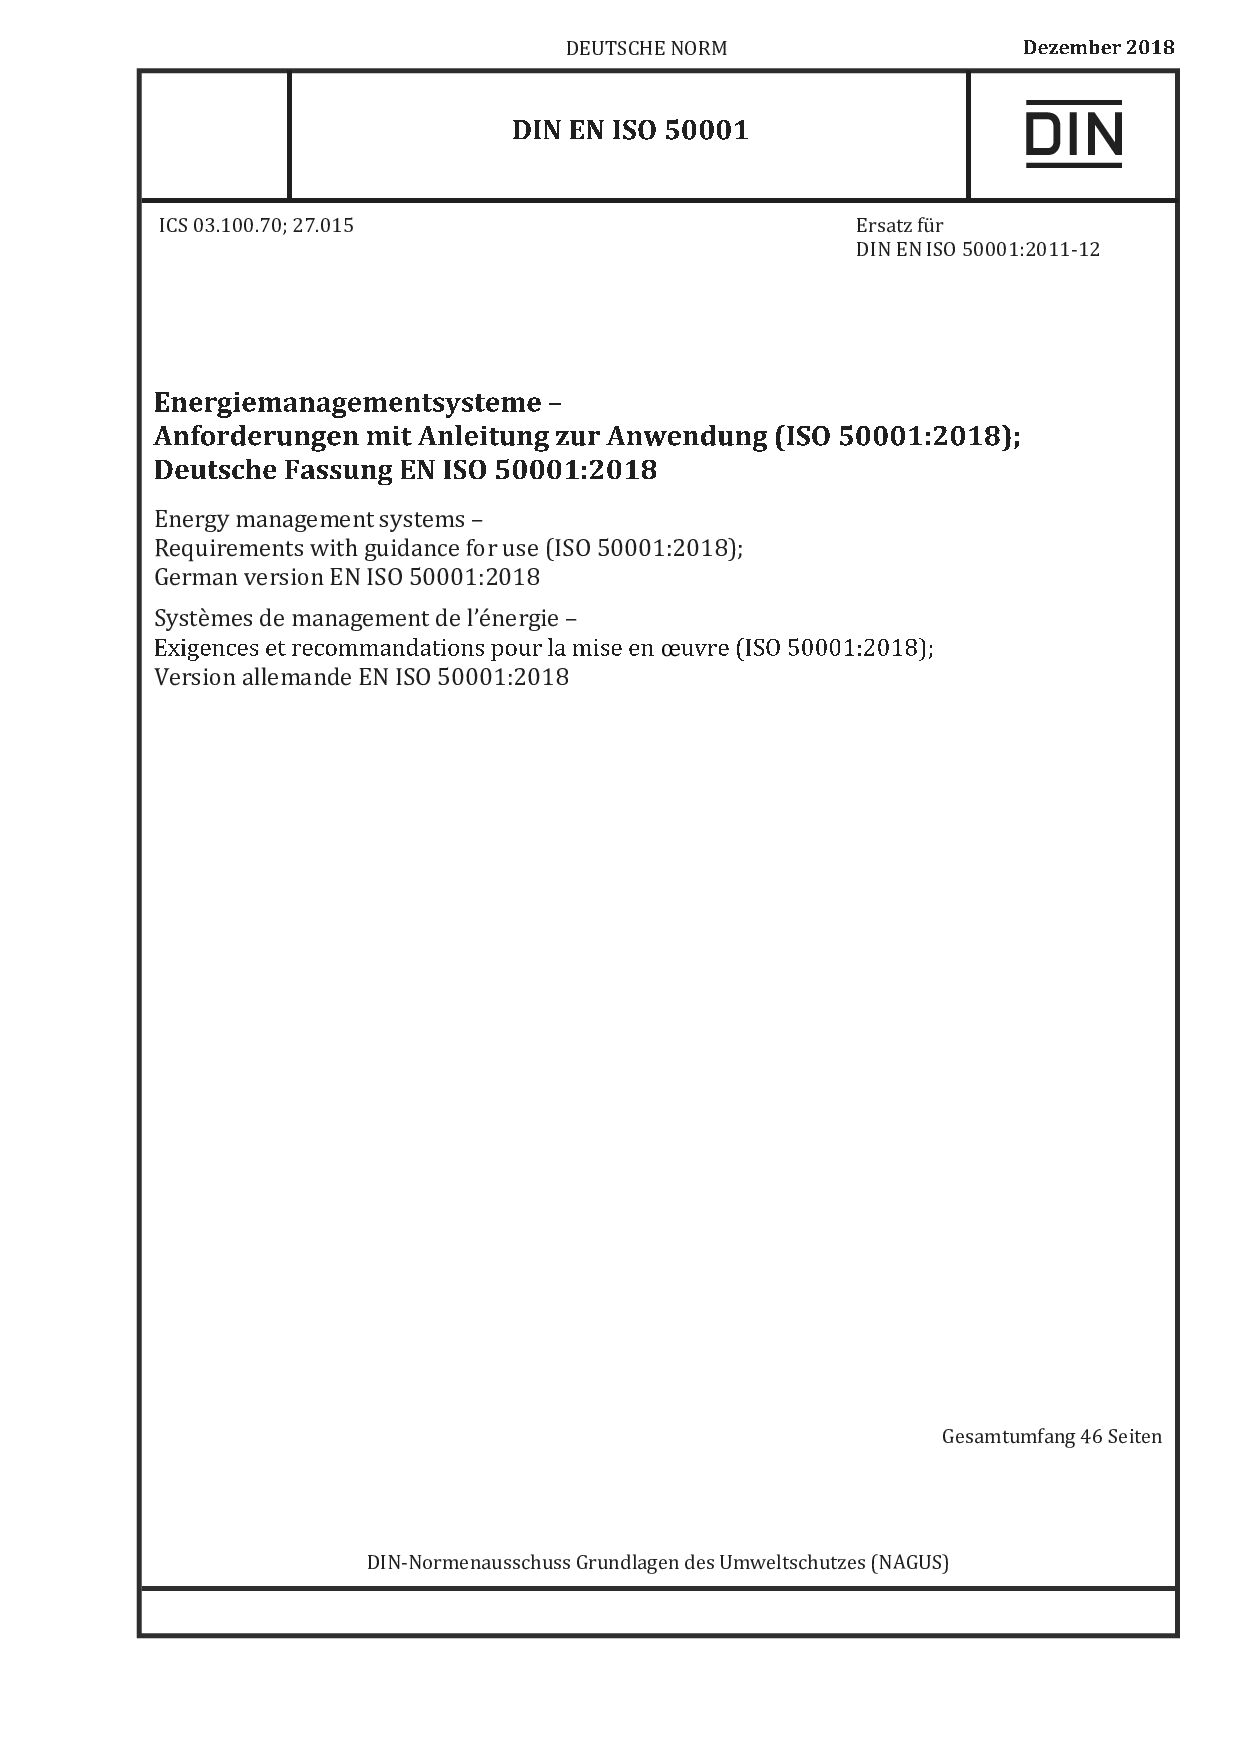 DIN EN ISO 50001:2018